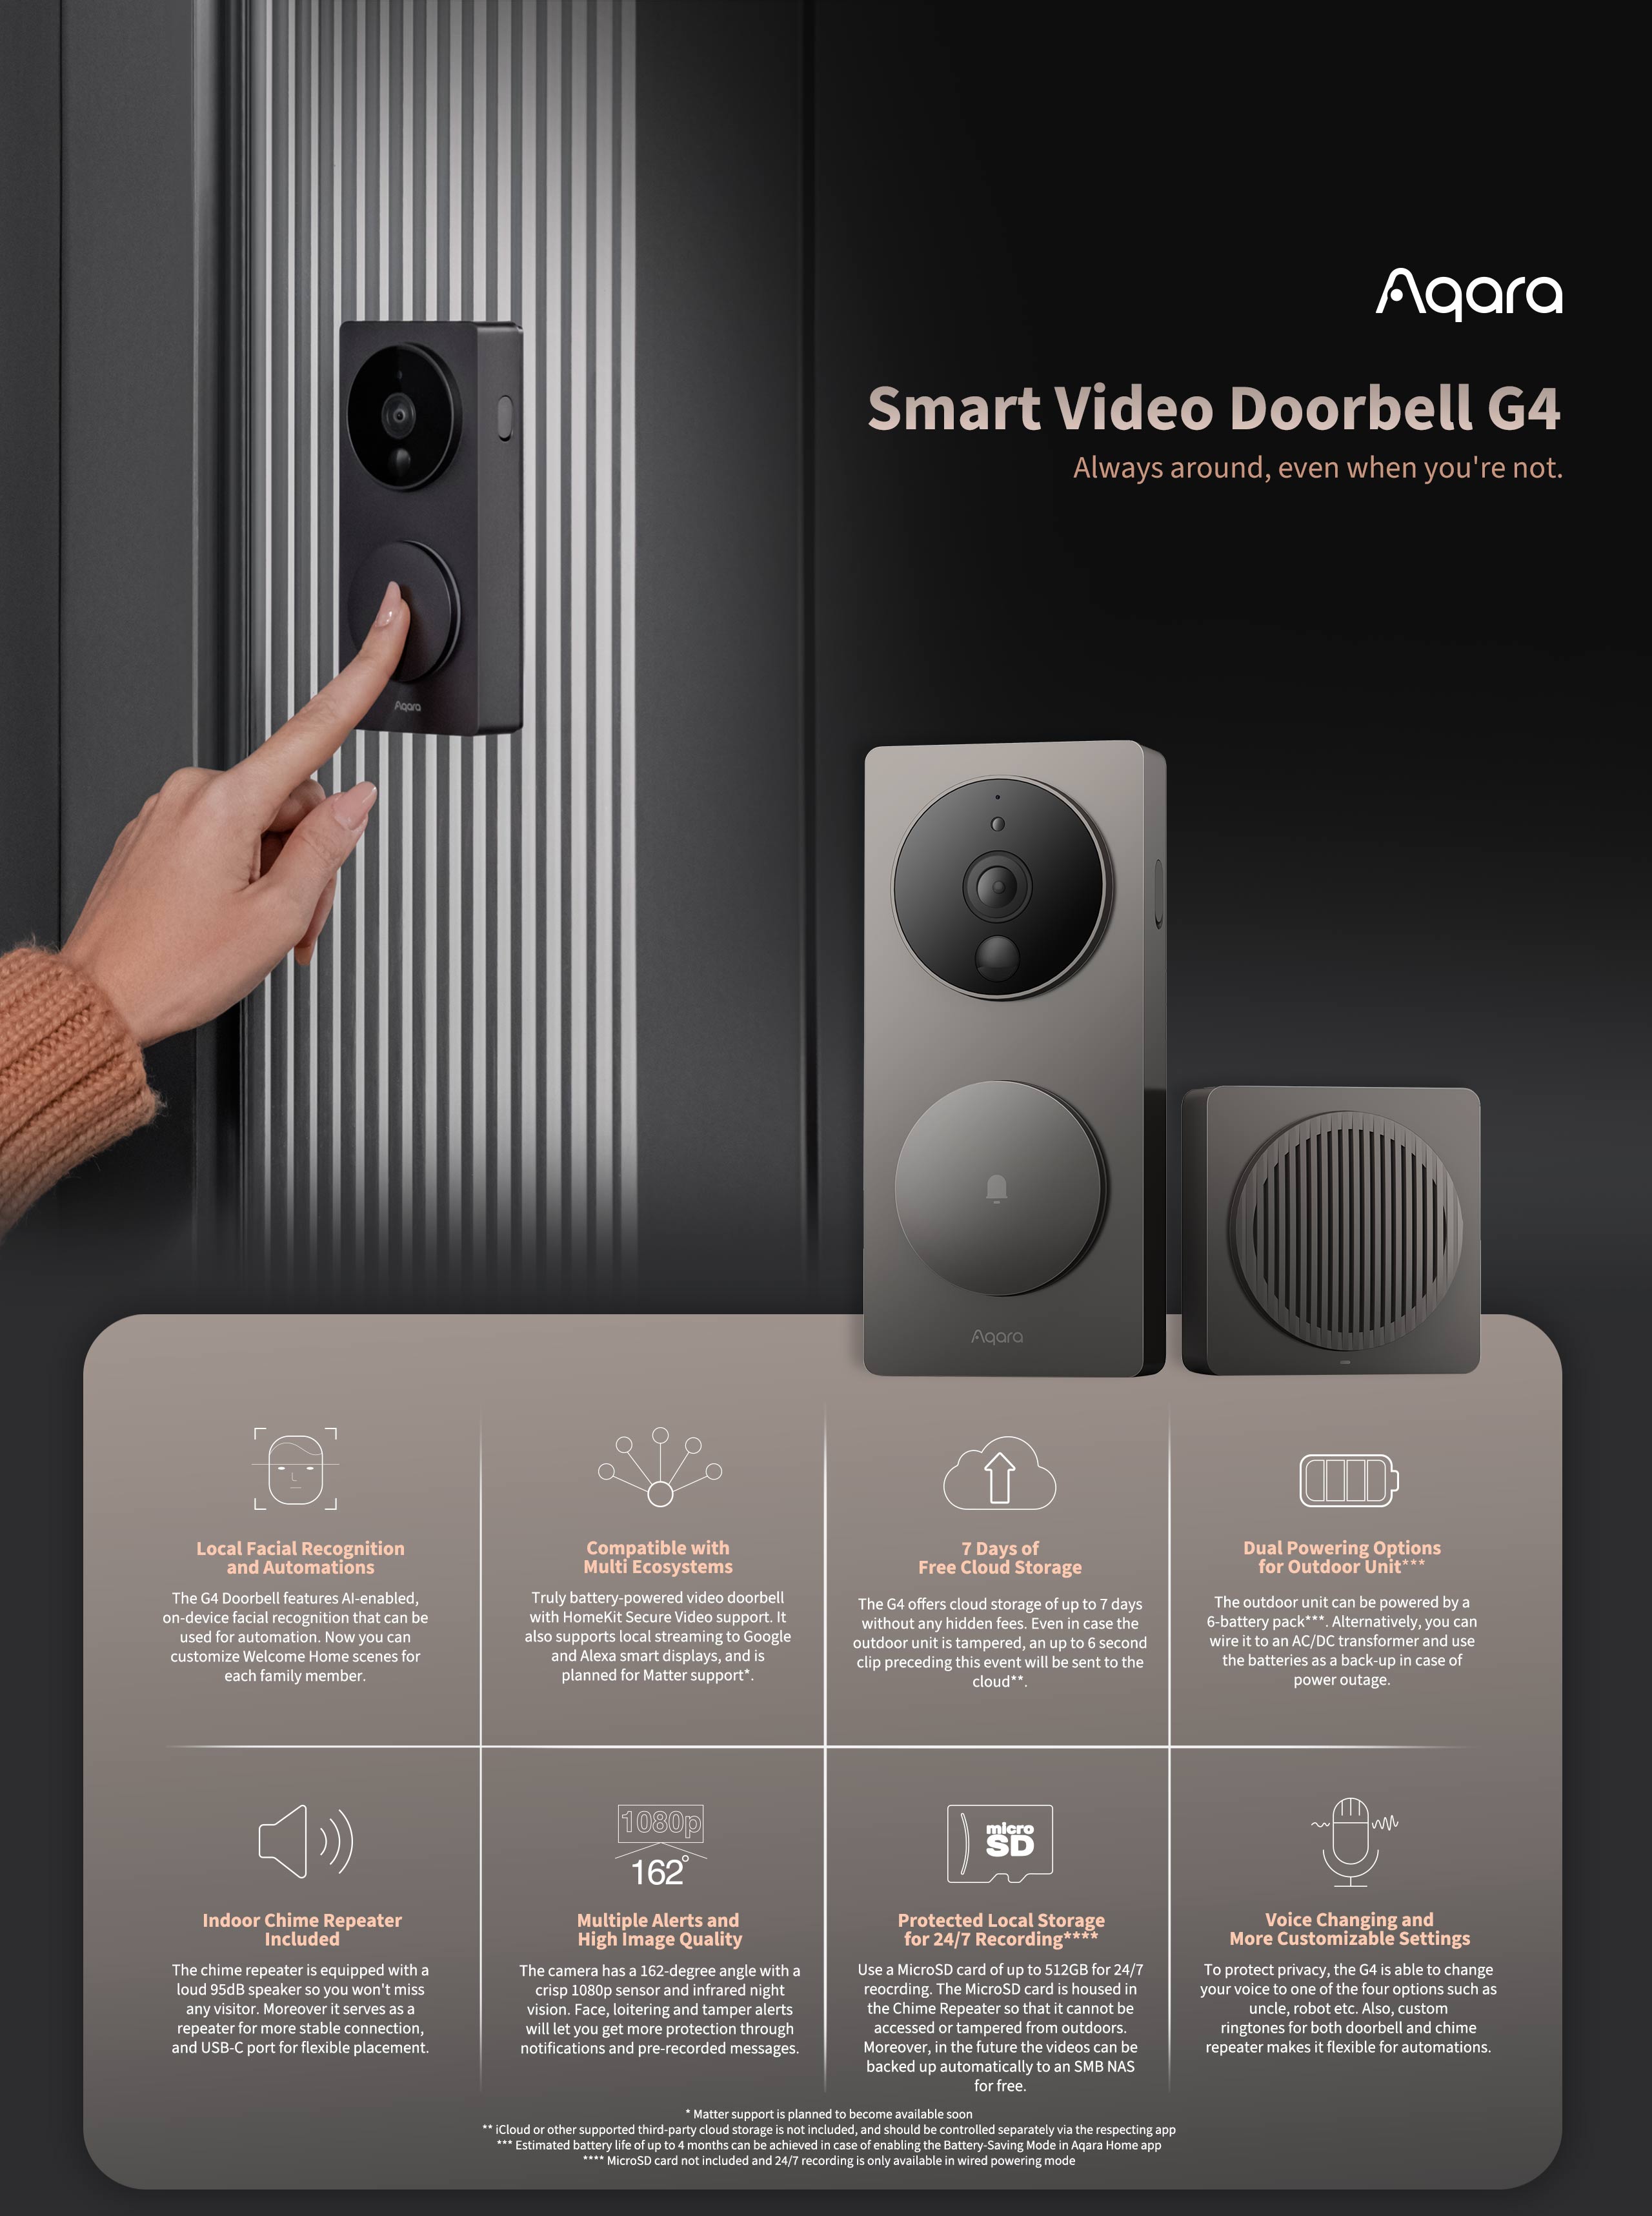  Smart Video Doorbell G4 - Triple Network